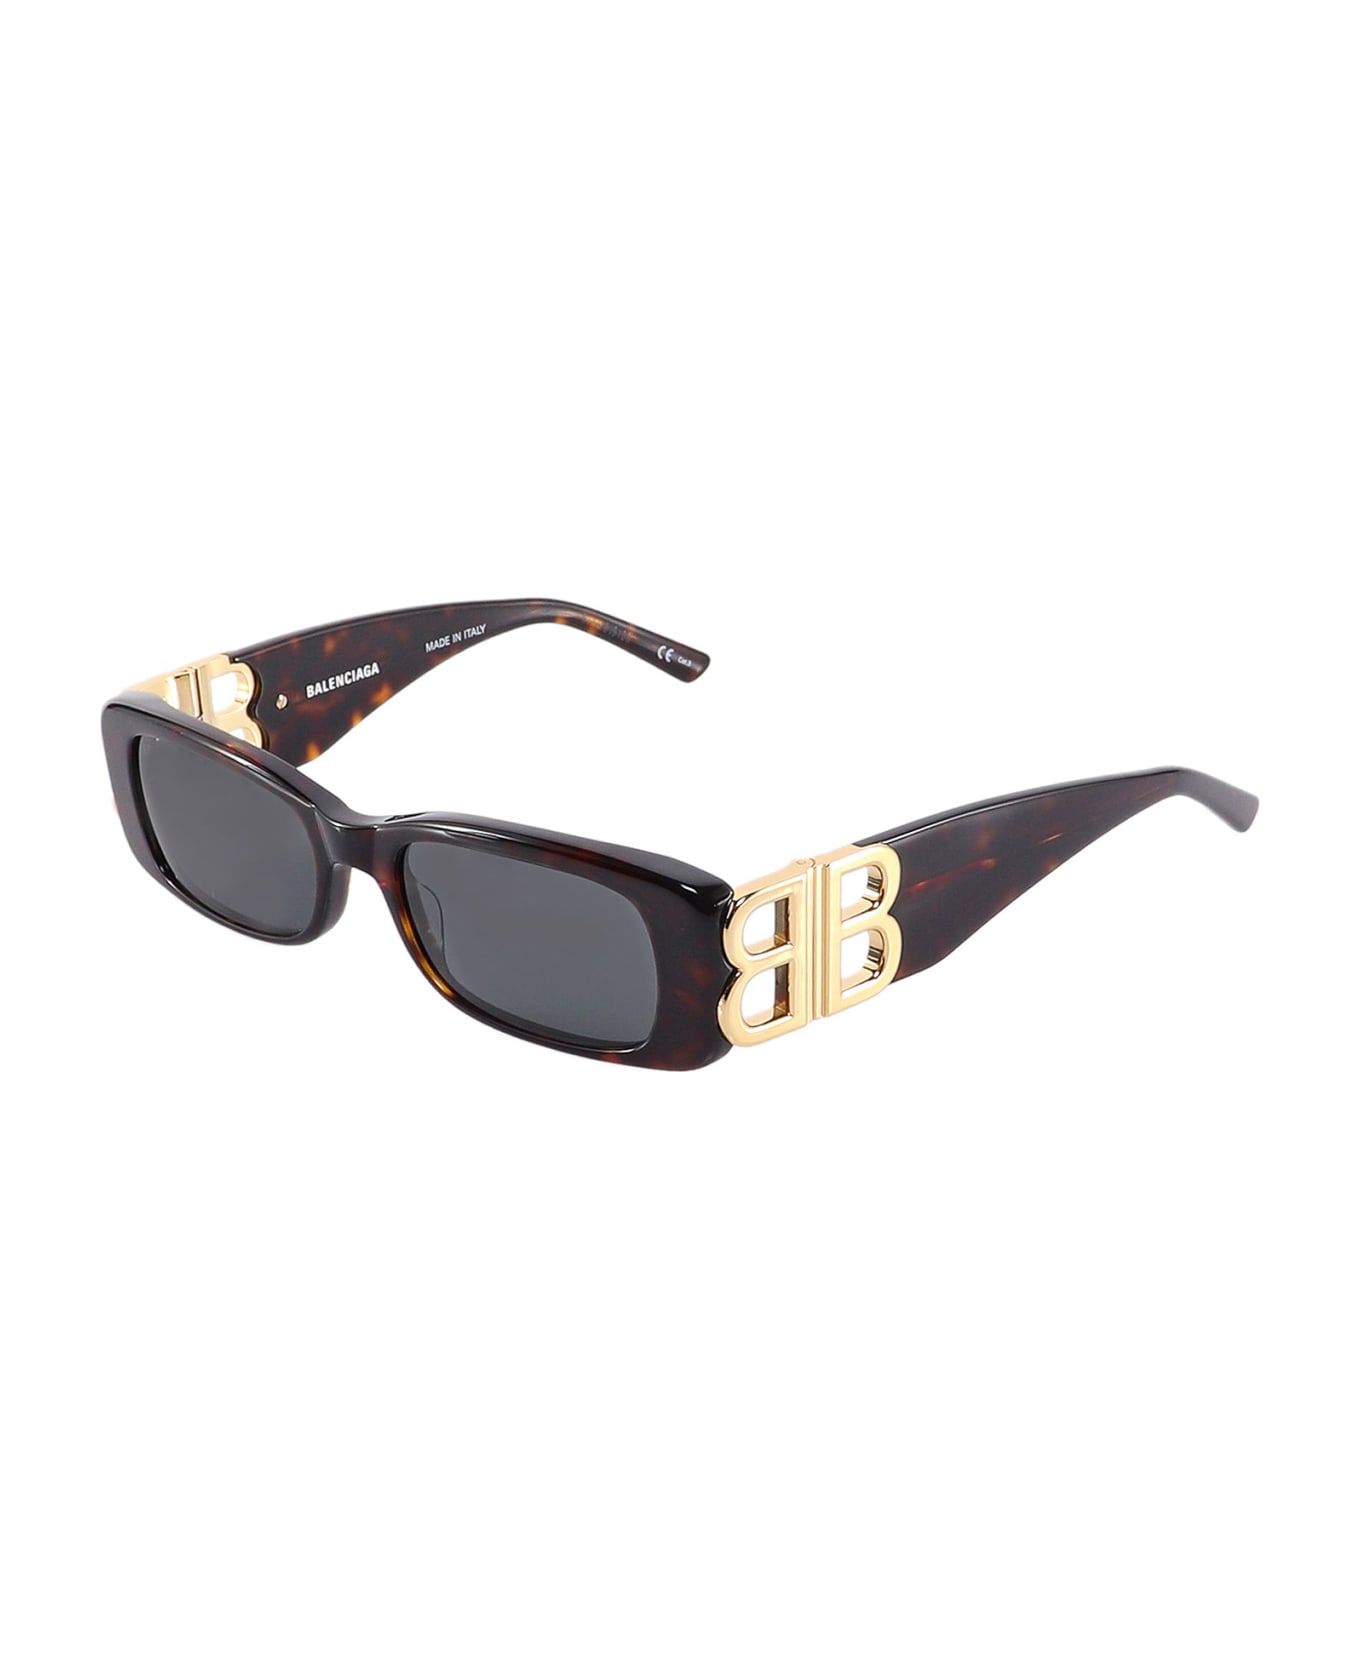 Balenciaga 'dynasty Rectangle' Rectangular Sunglasses - Brown